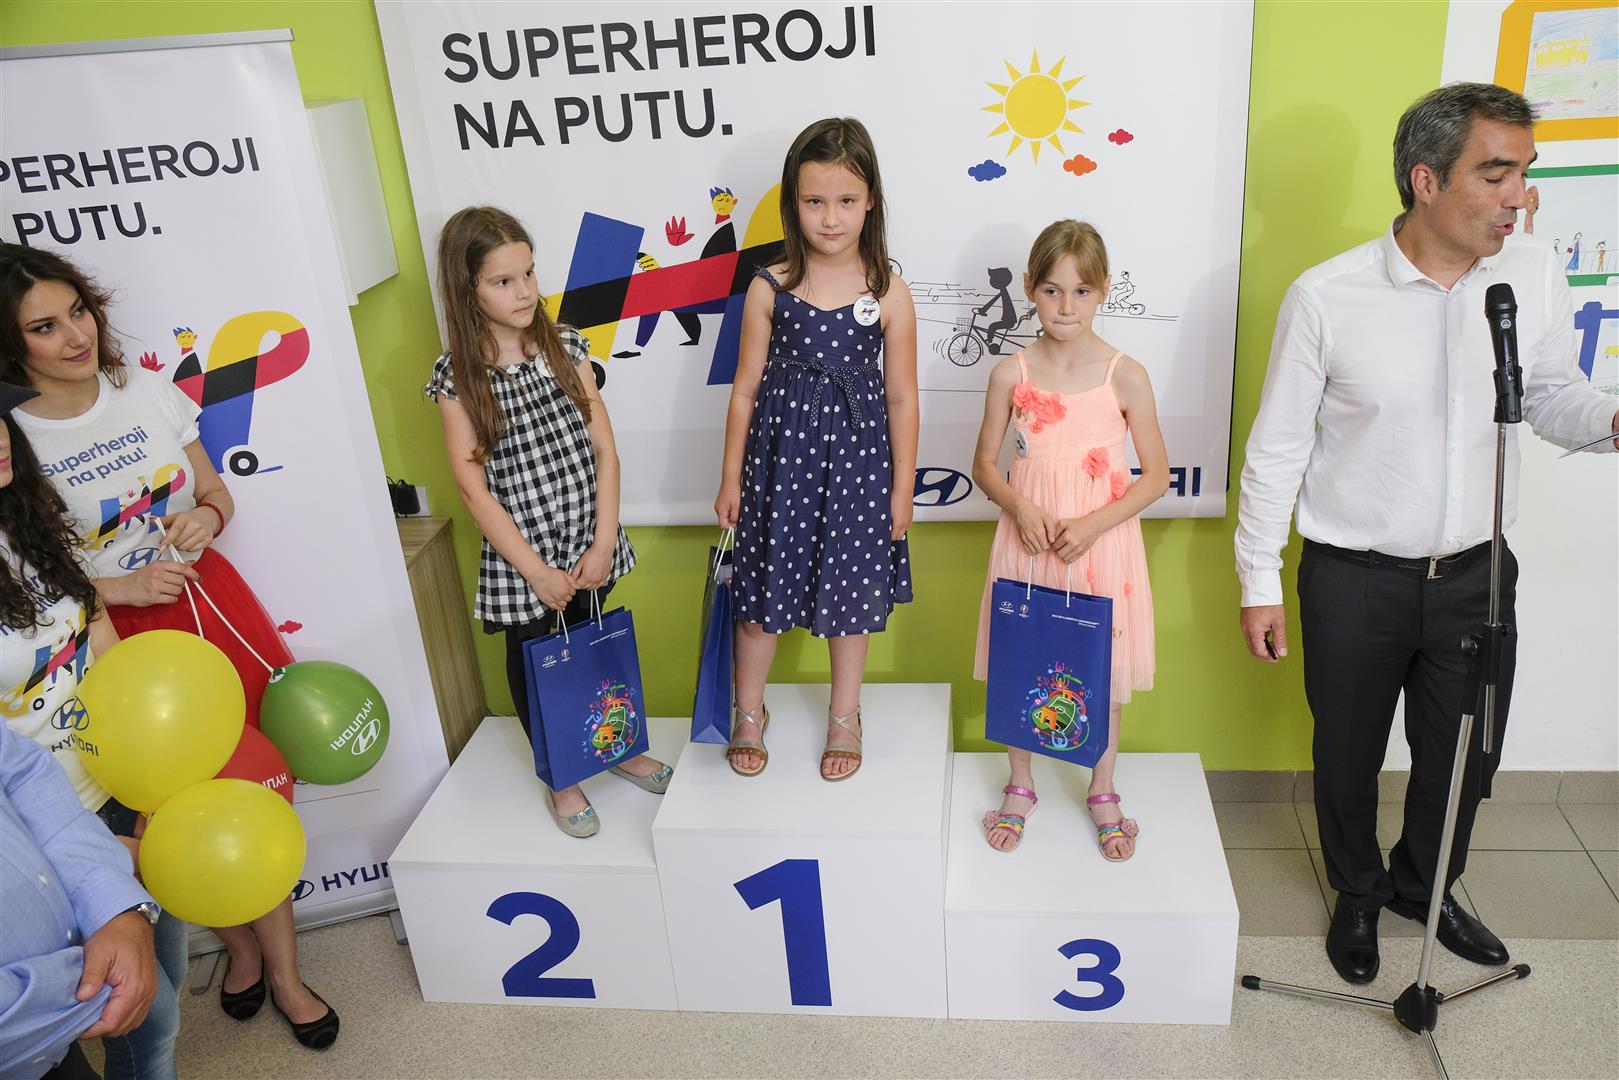 Hyundai Srbija dodelila nagrade najuspešnijim autorima likovnih radova na temu bezbednosti dece u saobraćaju pod nazivom “Superheroji na putu”